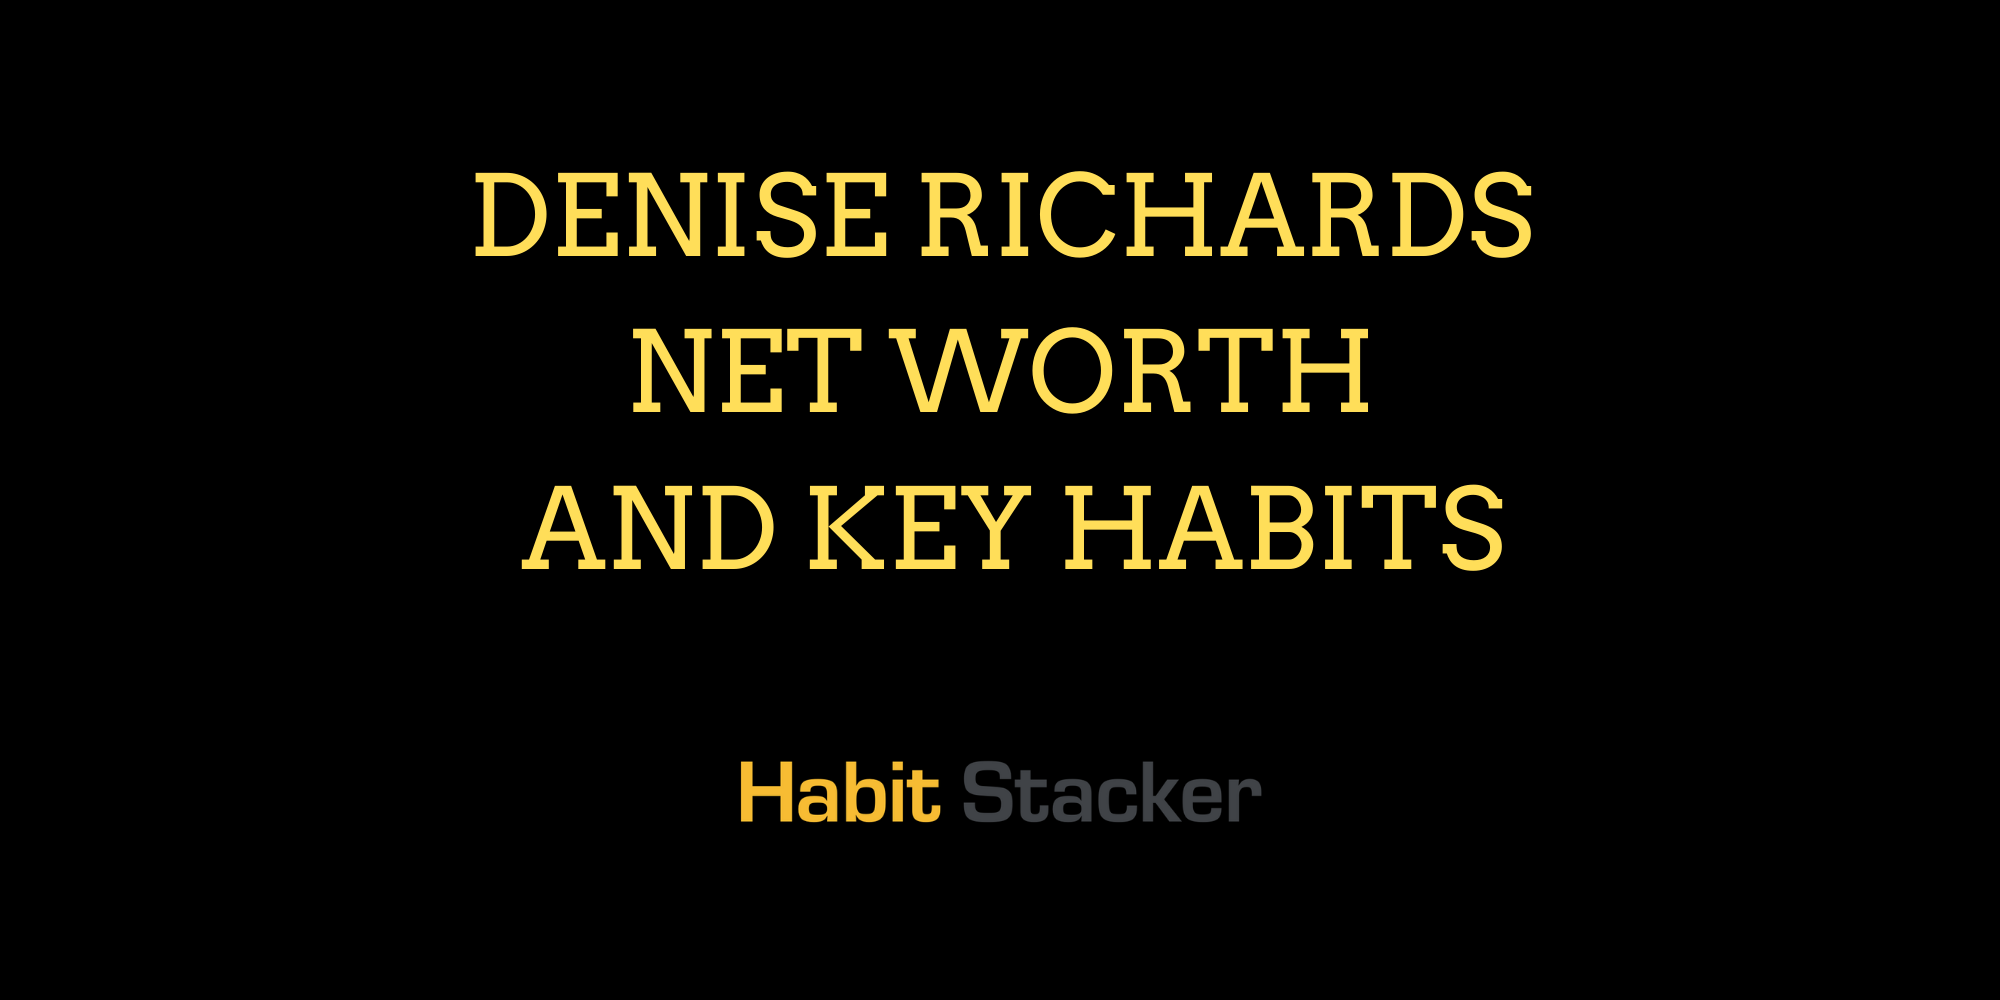 Denise Richards Net Worth and Key Habits